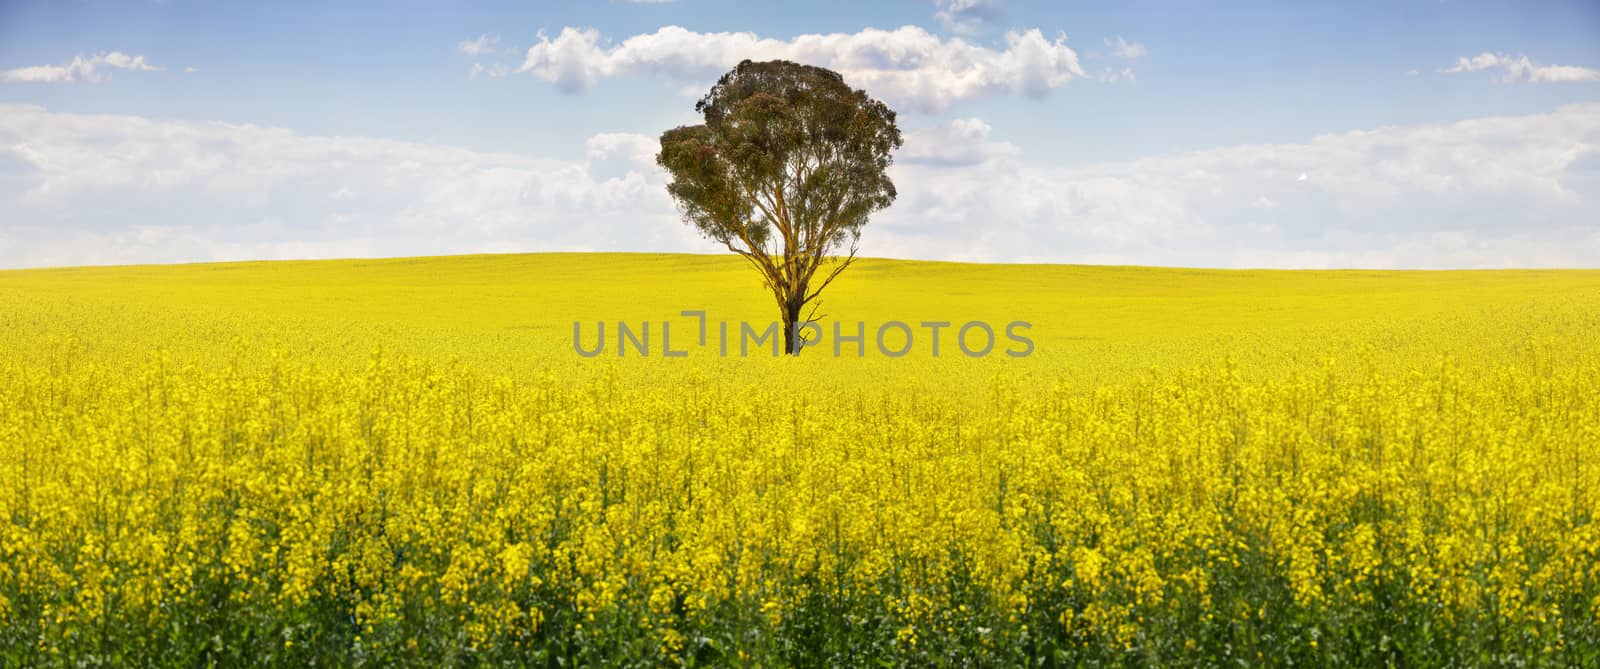 Australian gum tree in a field of golden canola.